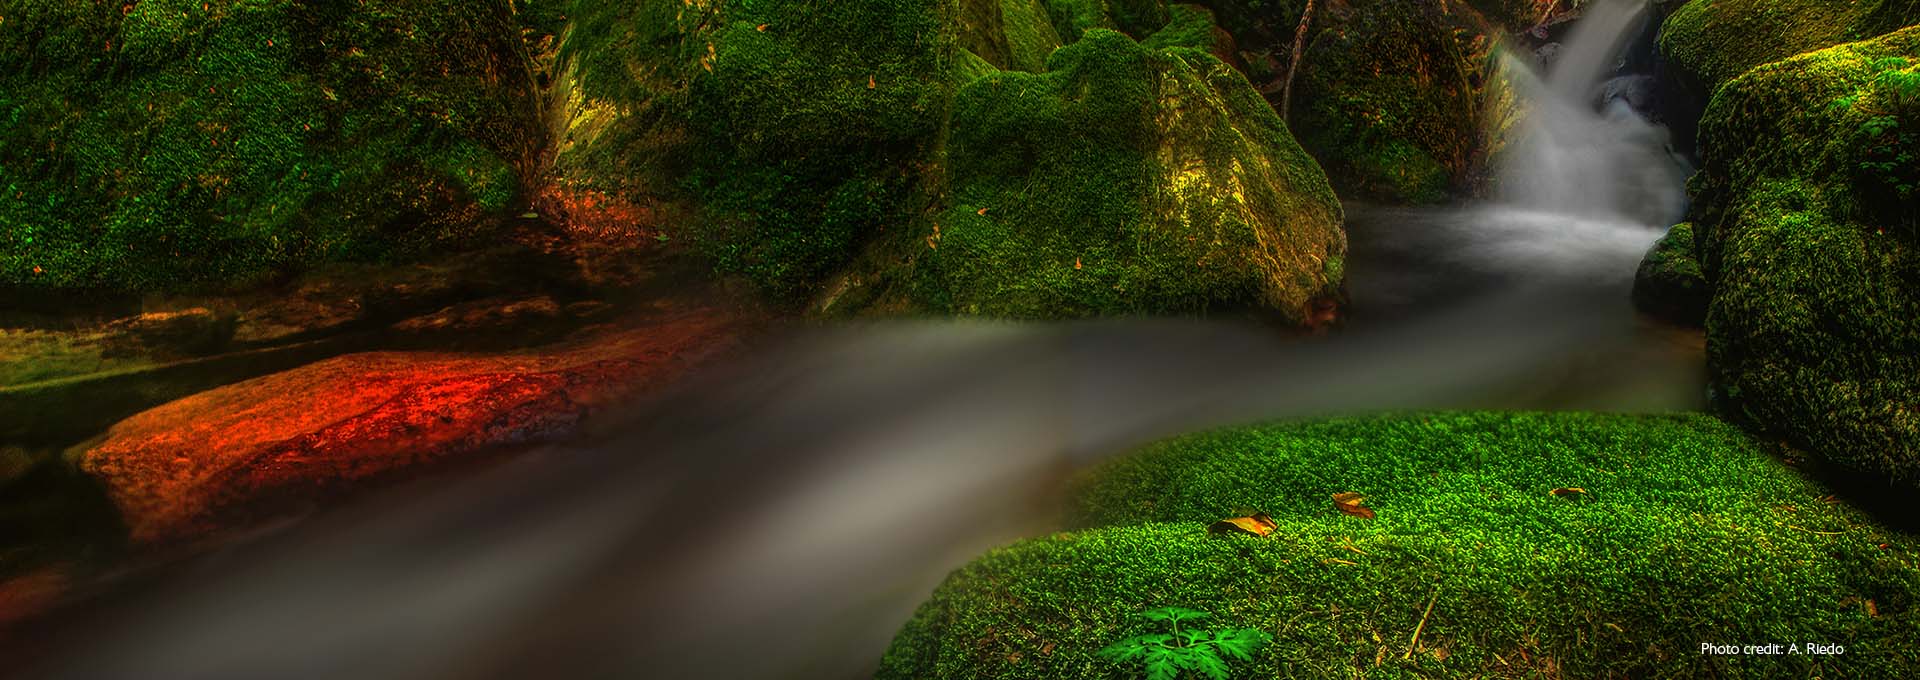 Immagine di un piccolo ruscello tra rocce ricoperte di muschio di un verde brillante fotografato da utenti di apparecchi acustici Bernafon Alpha